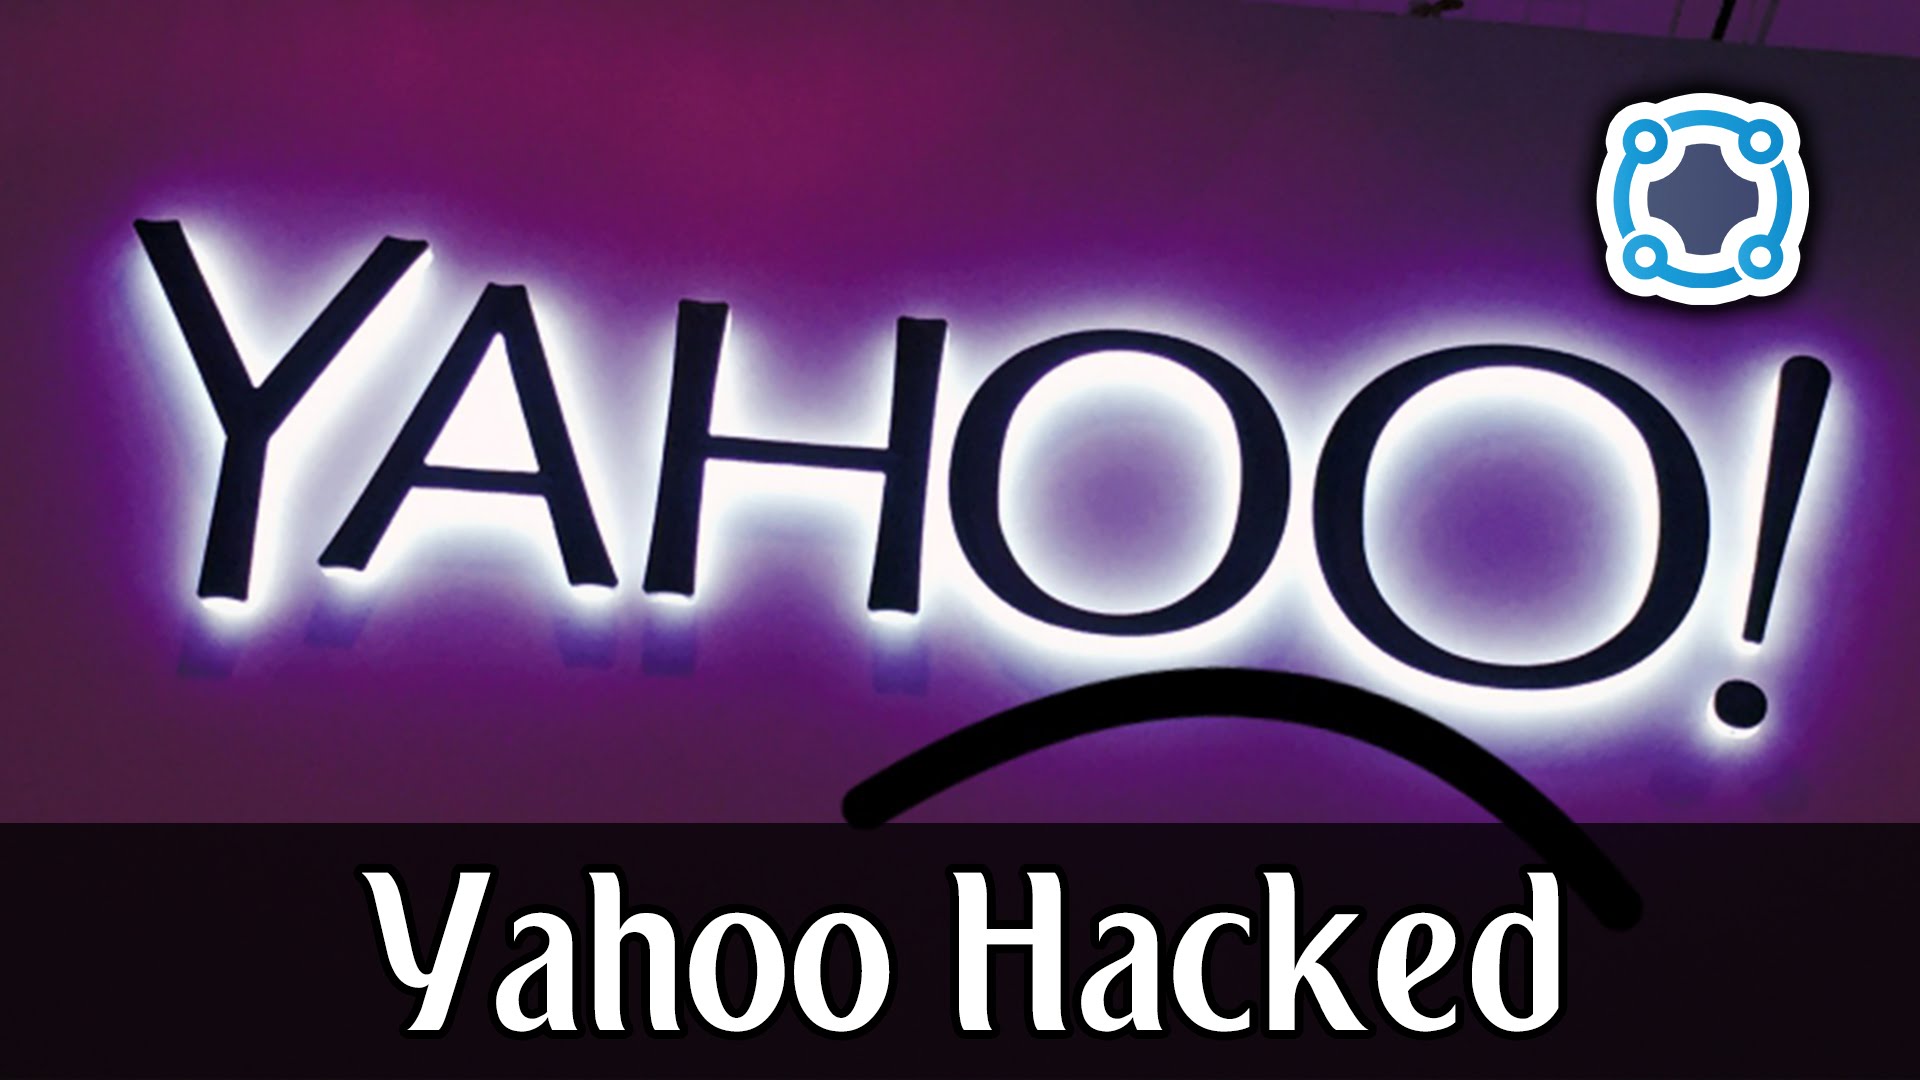 YAHOO HACKED -- 500 Million Accounts Stolen